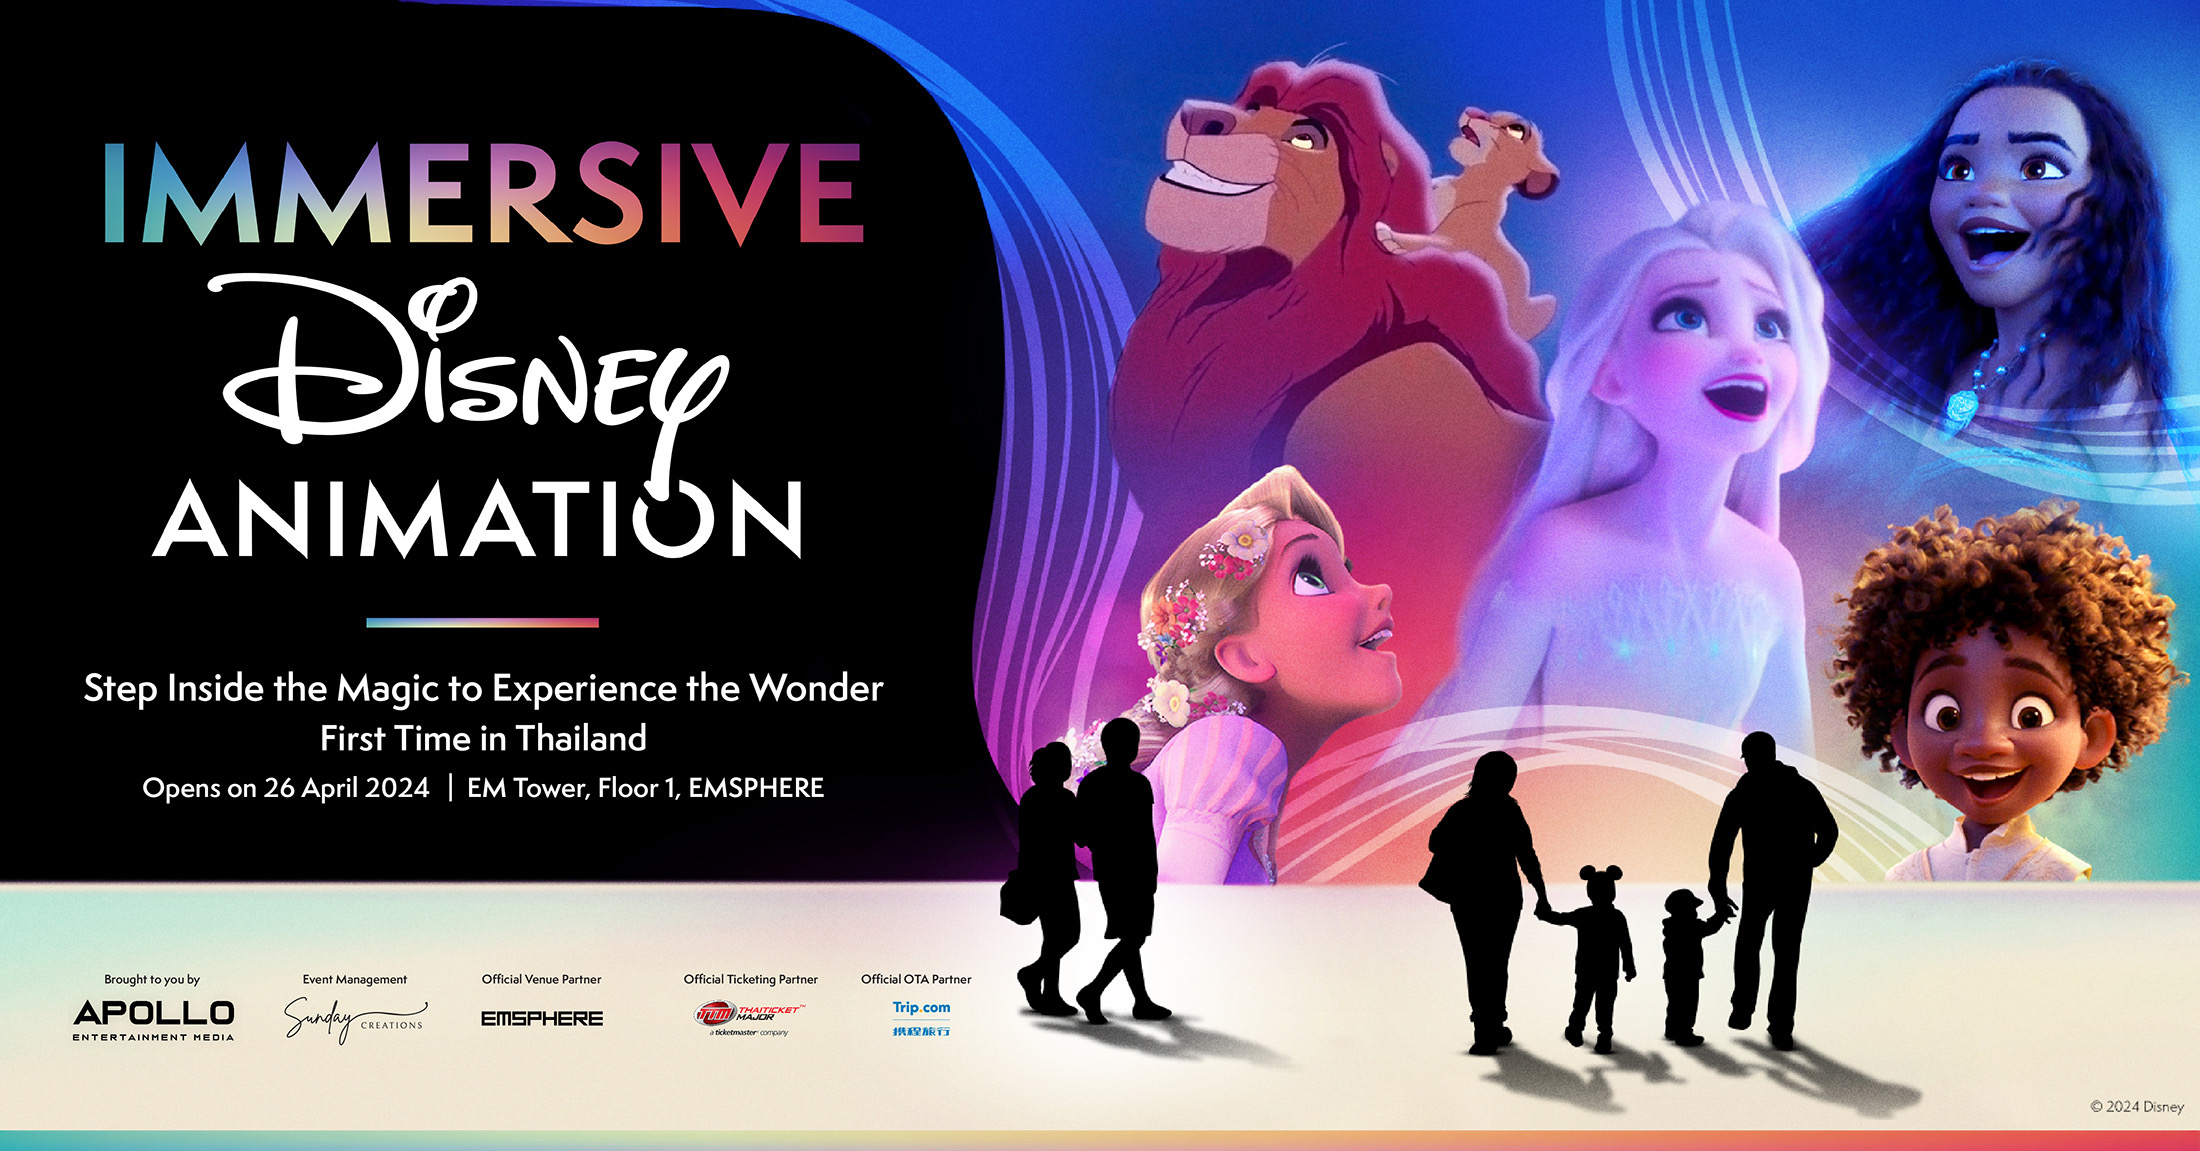 ร่วมเฉลิมฉลองครบรอบ 100 ปีกับเวทมนตร์สุดมหัศจรรย์ในโลกAnimation ของ Disney กับงานแสดงนิทรรศการ Immersive Disney Animation ครั้งแรกในประเทศไทย 